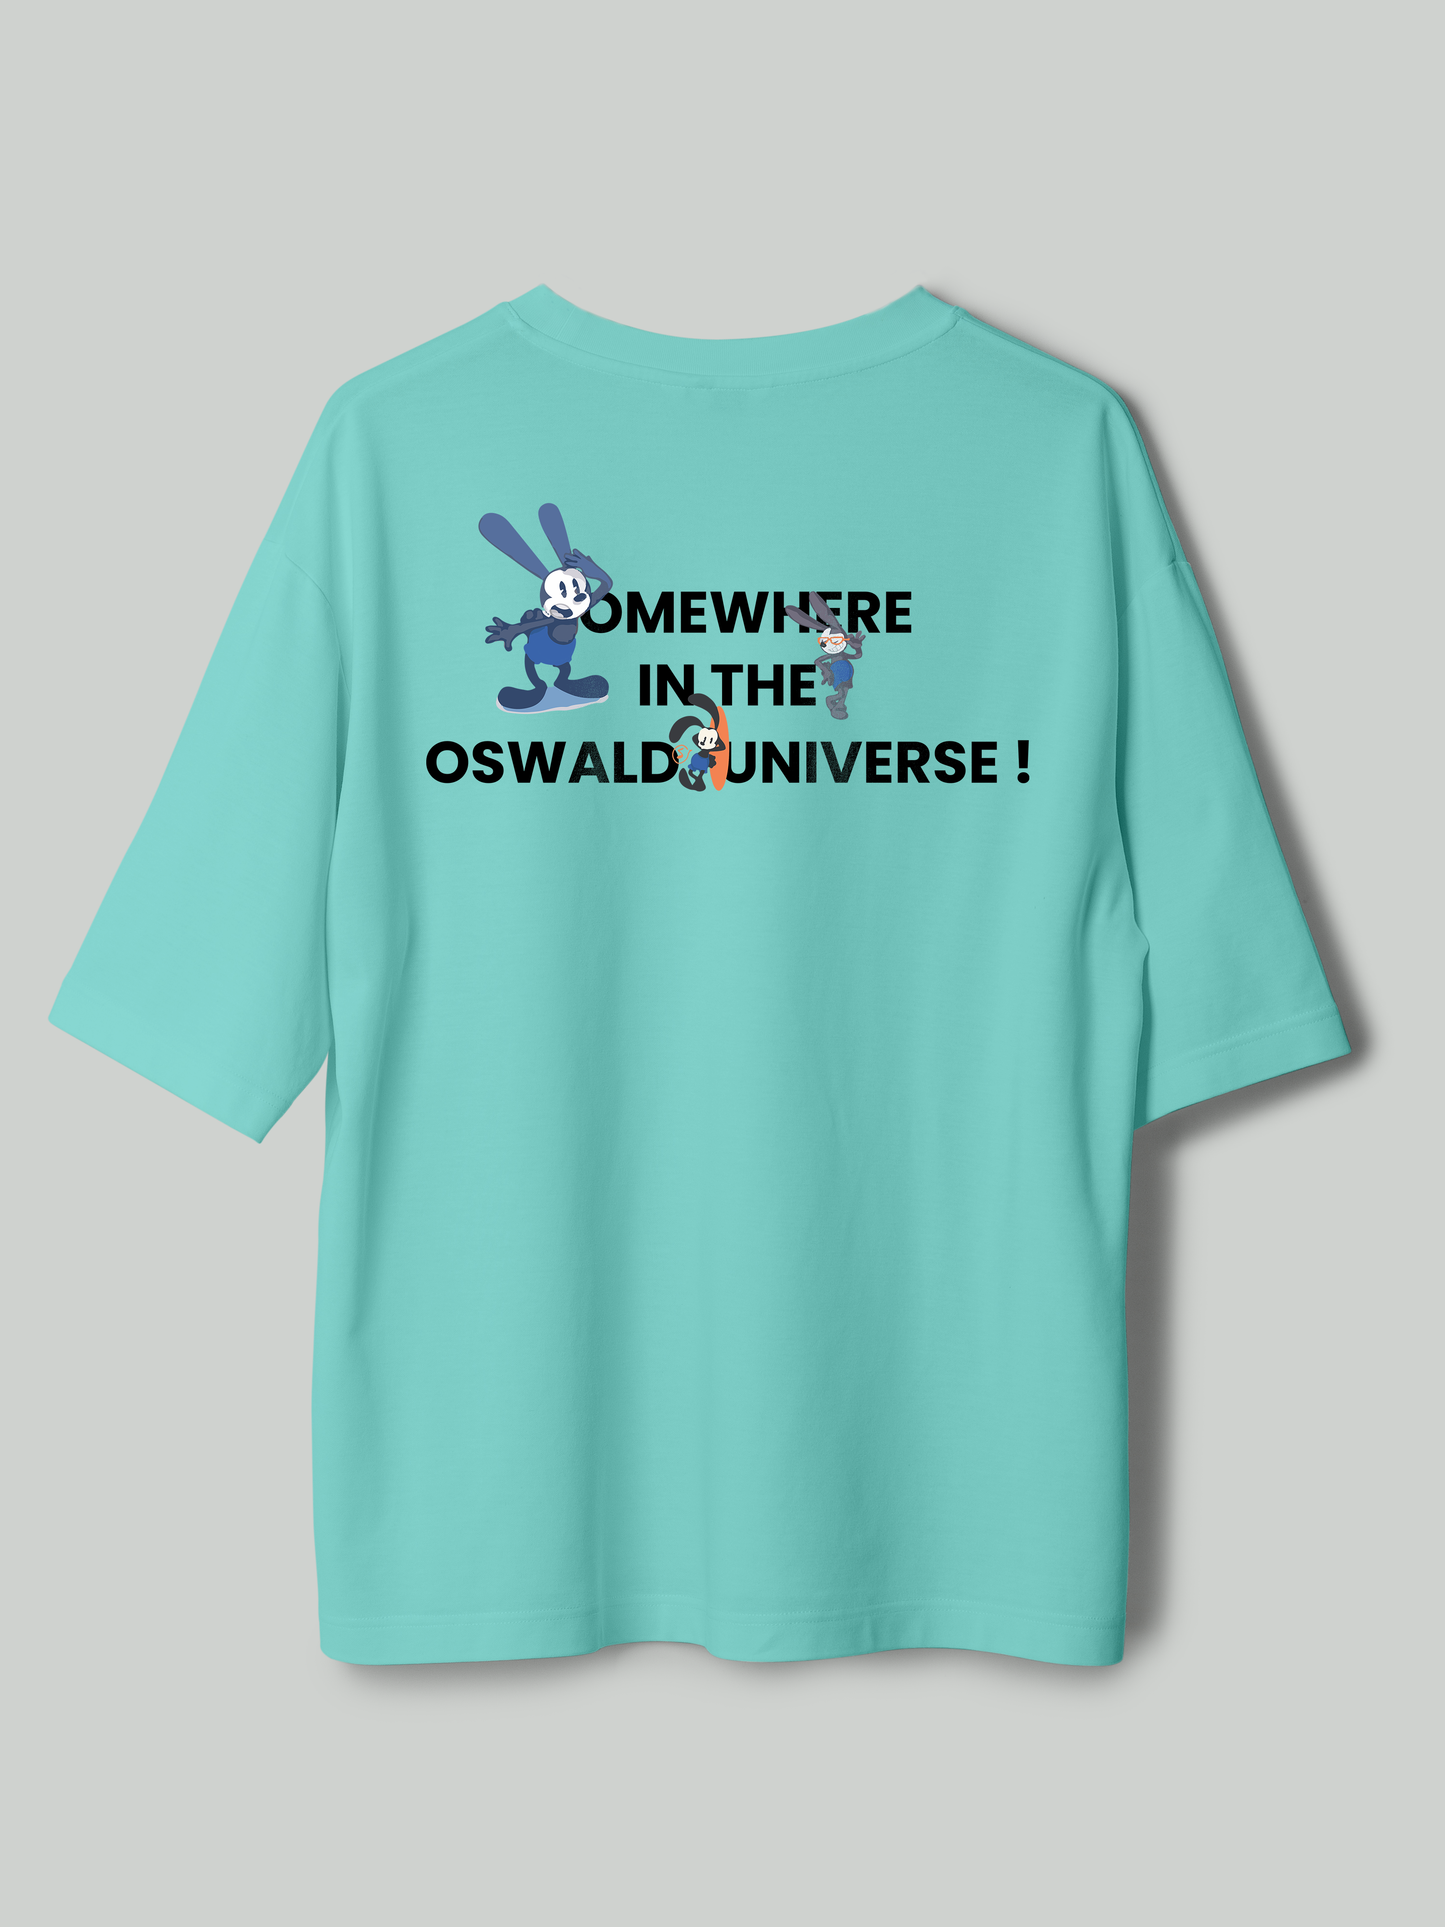 Oswald universe